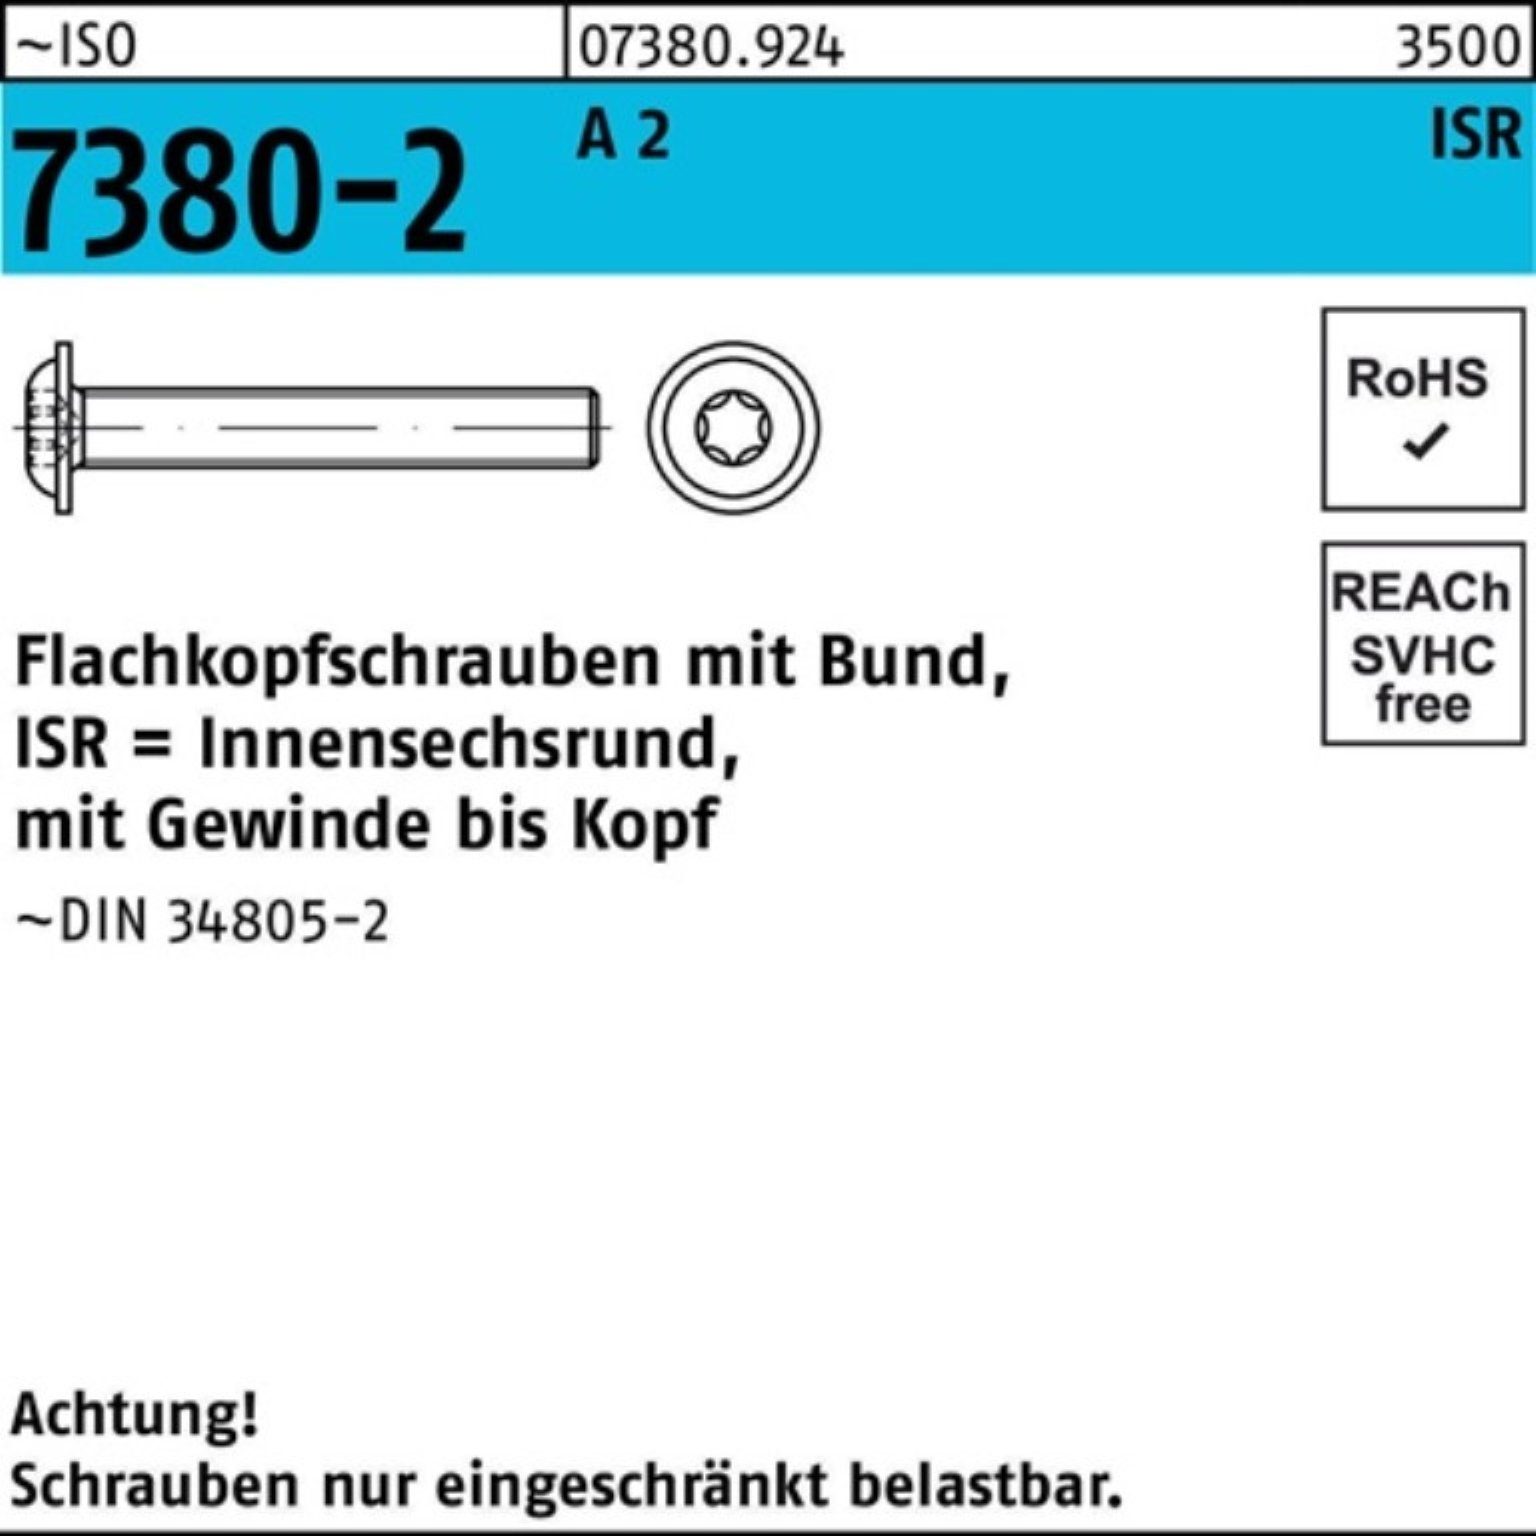 Reyher Schraube A Bund/ISR 200 7380-2 45-T30 M6x Pack 200er Flachkopfschraube ISO VG 2